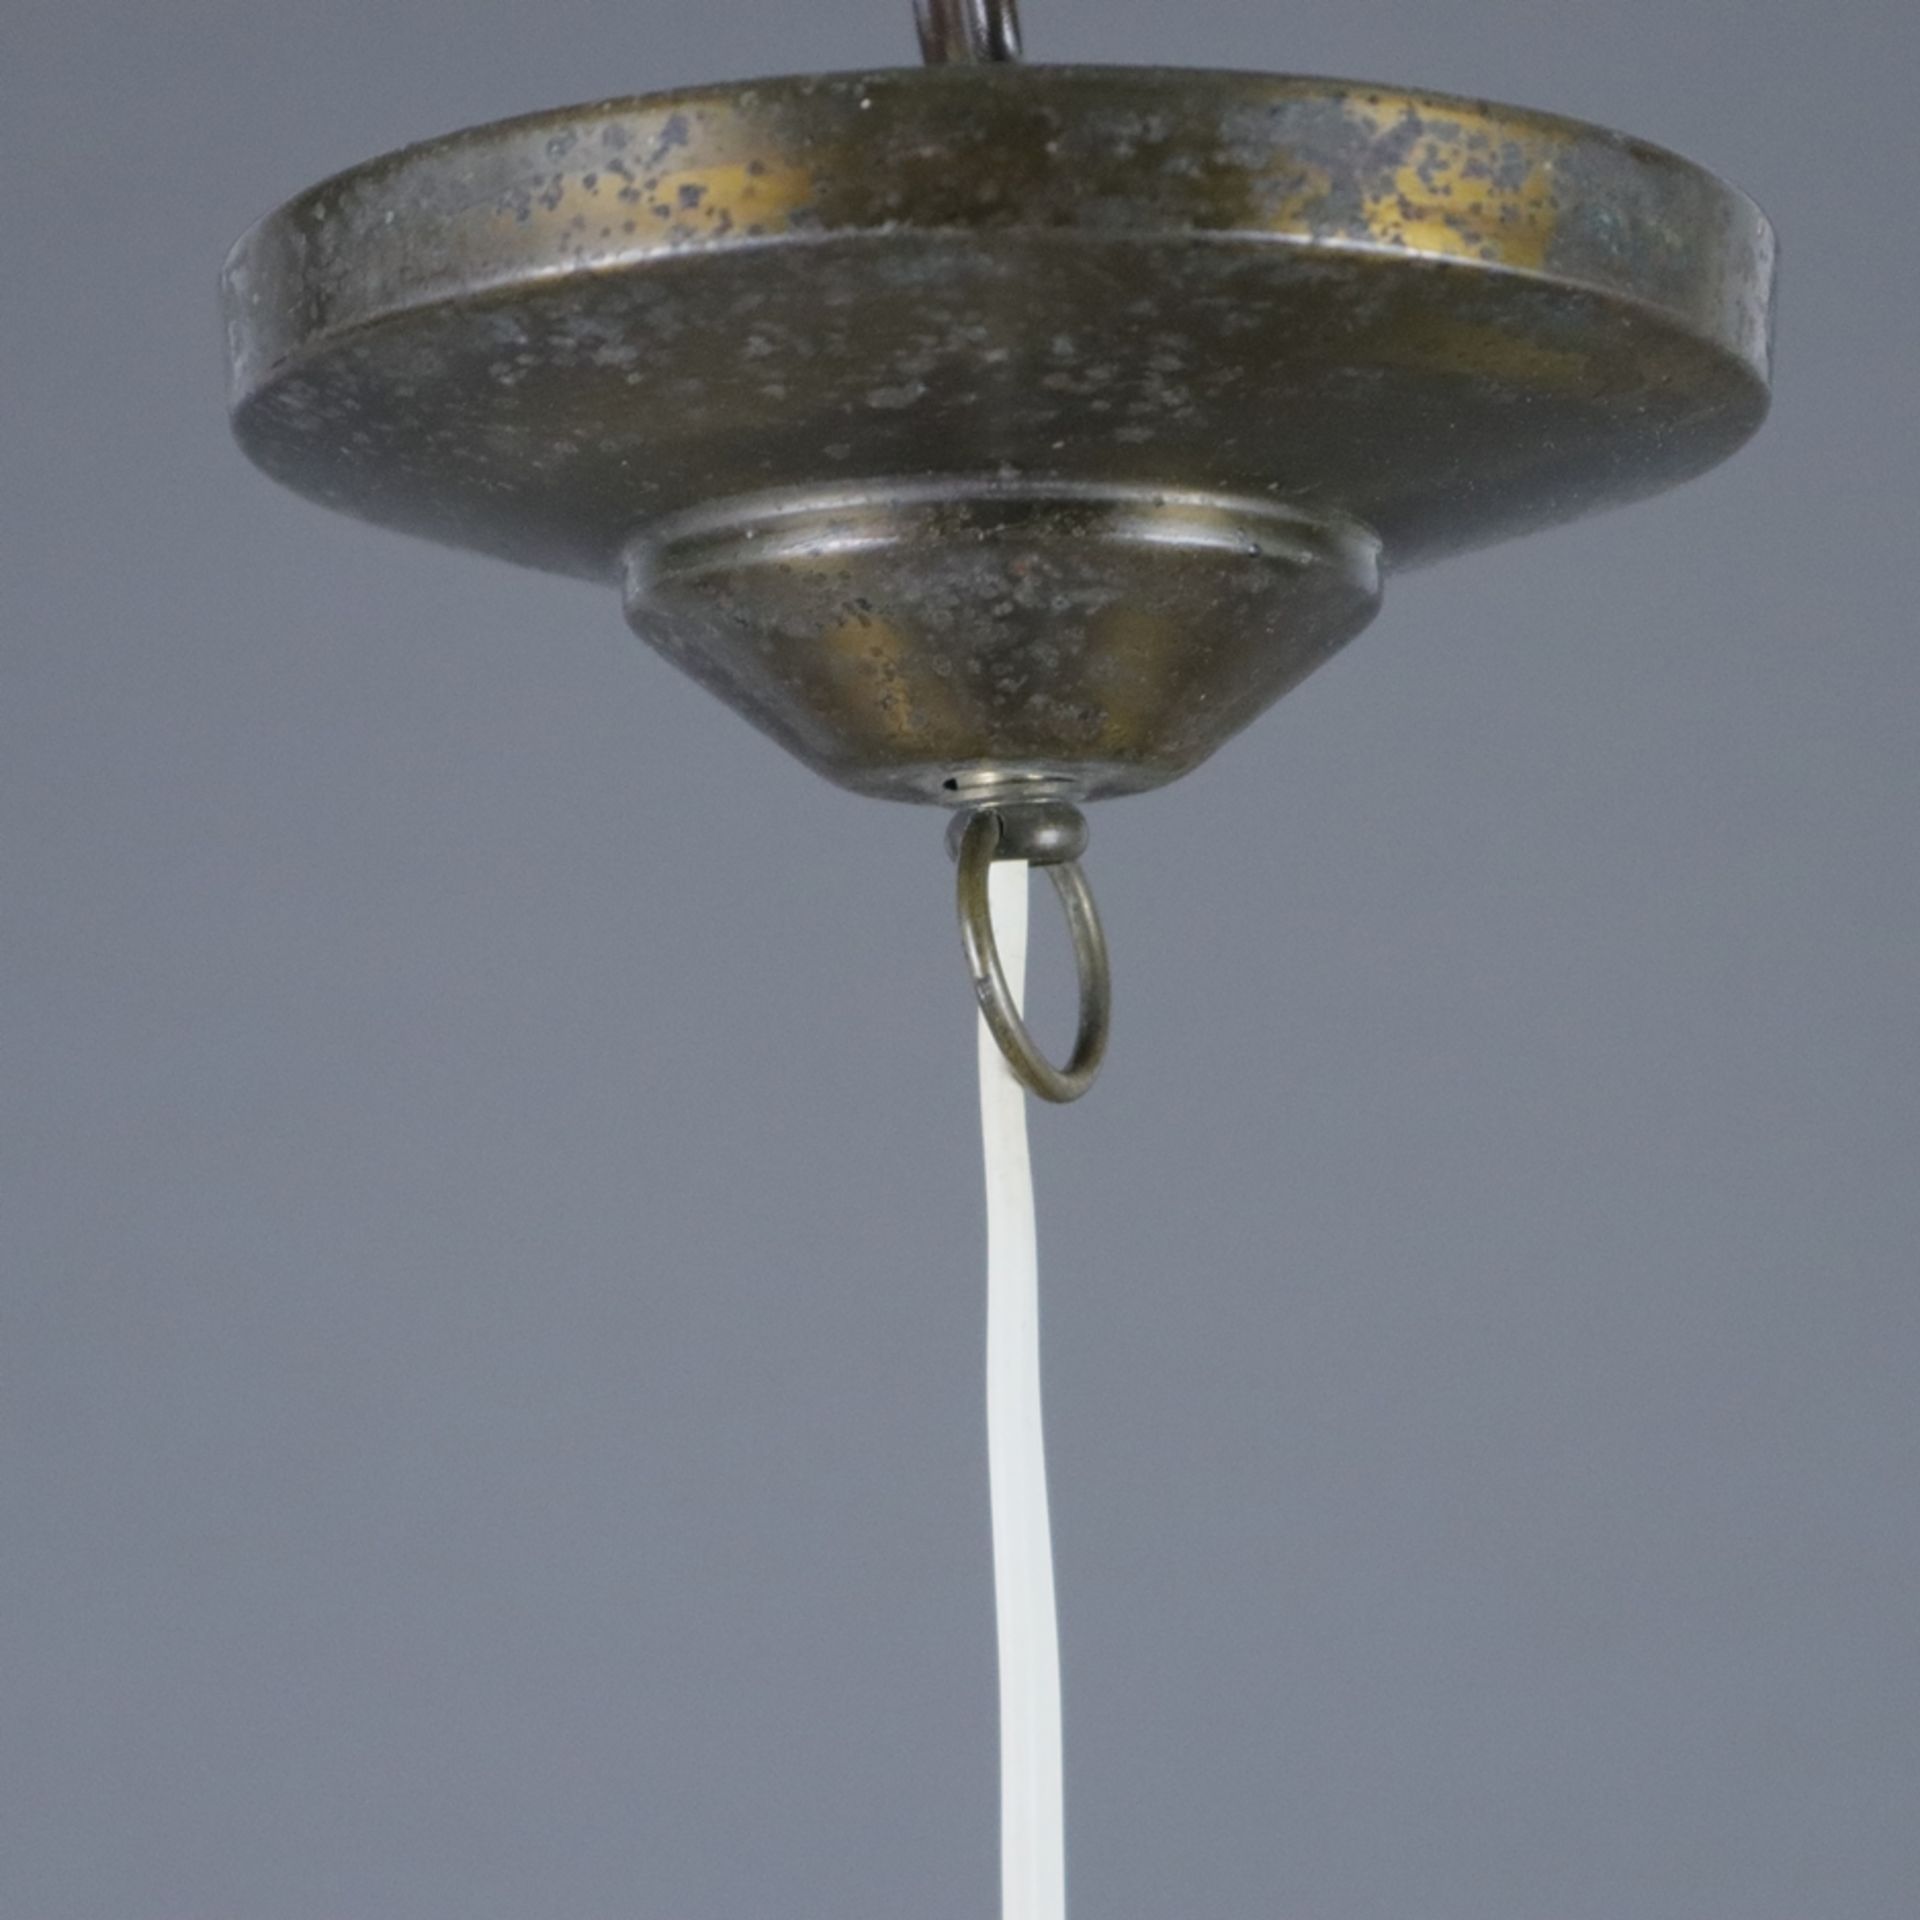 Jugendstil-Deckenlampe - Anfang 20. Jh., glockenförmiger Glas-Schirm mit opalweißem Unterfang, Meta - Bild 5 aus 7